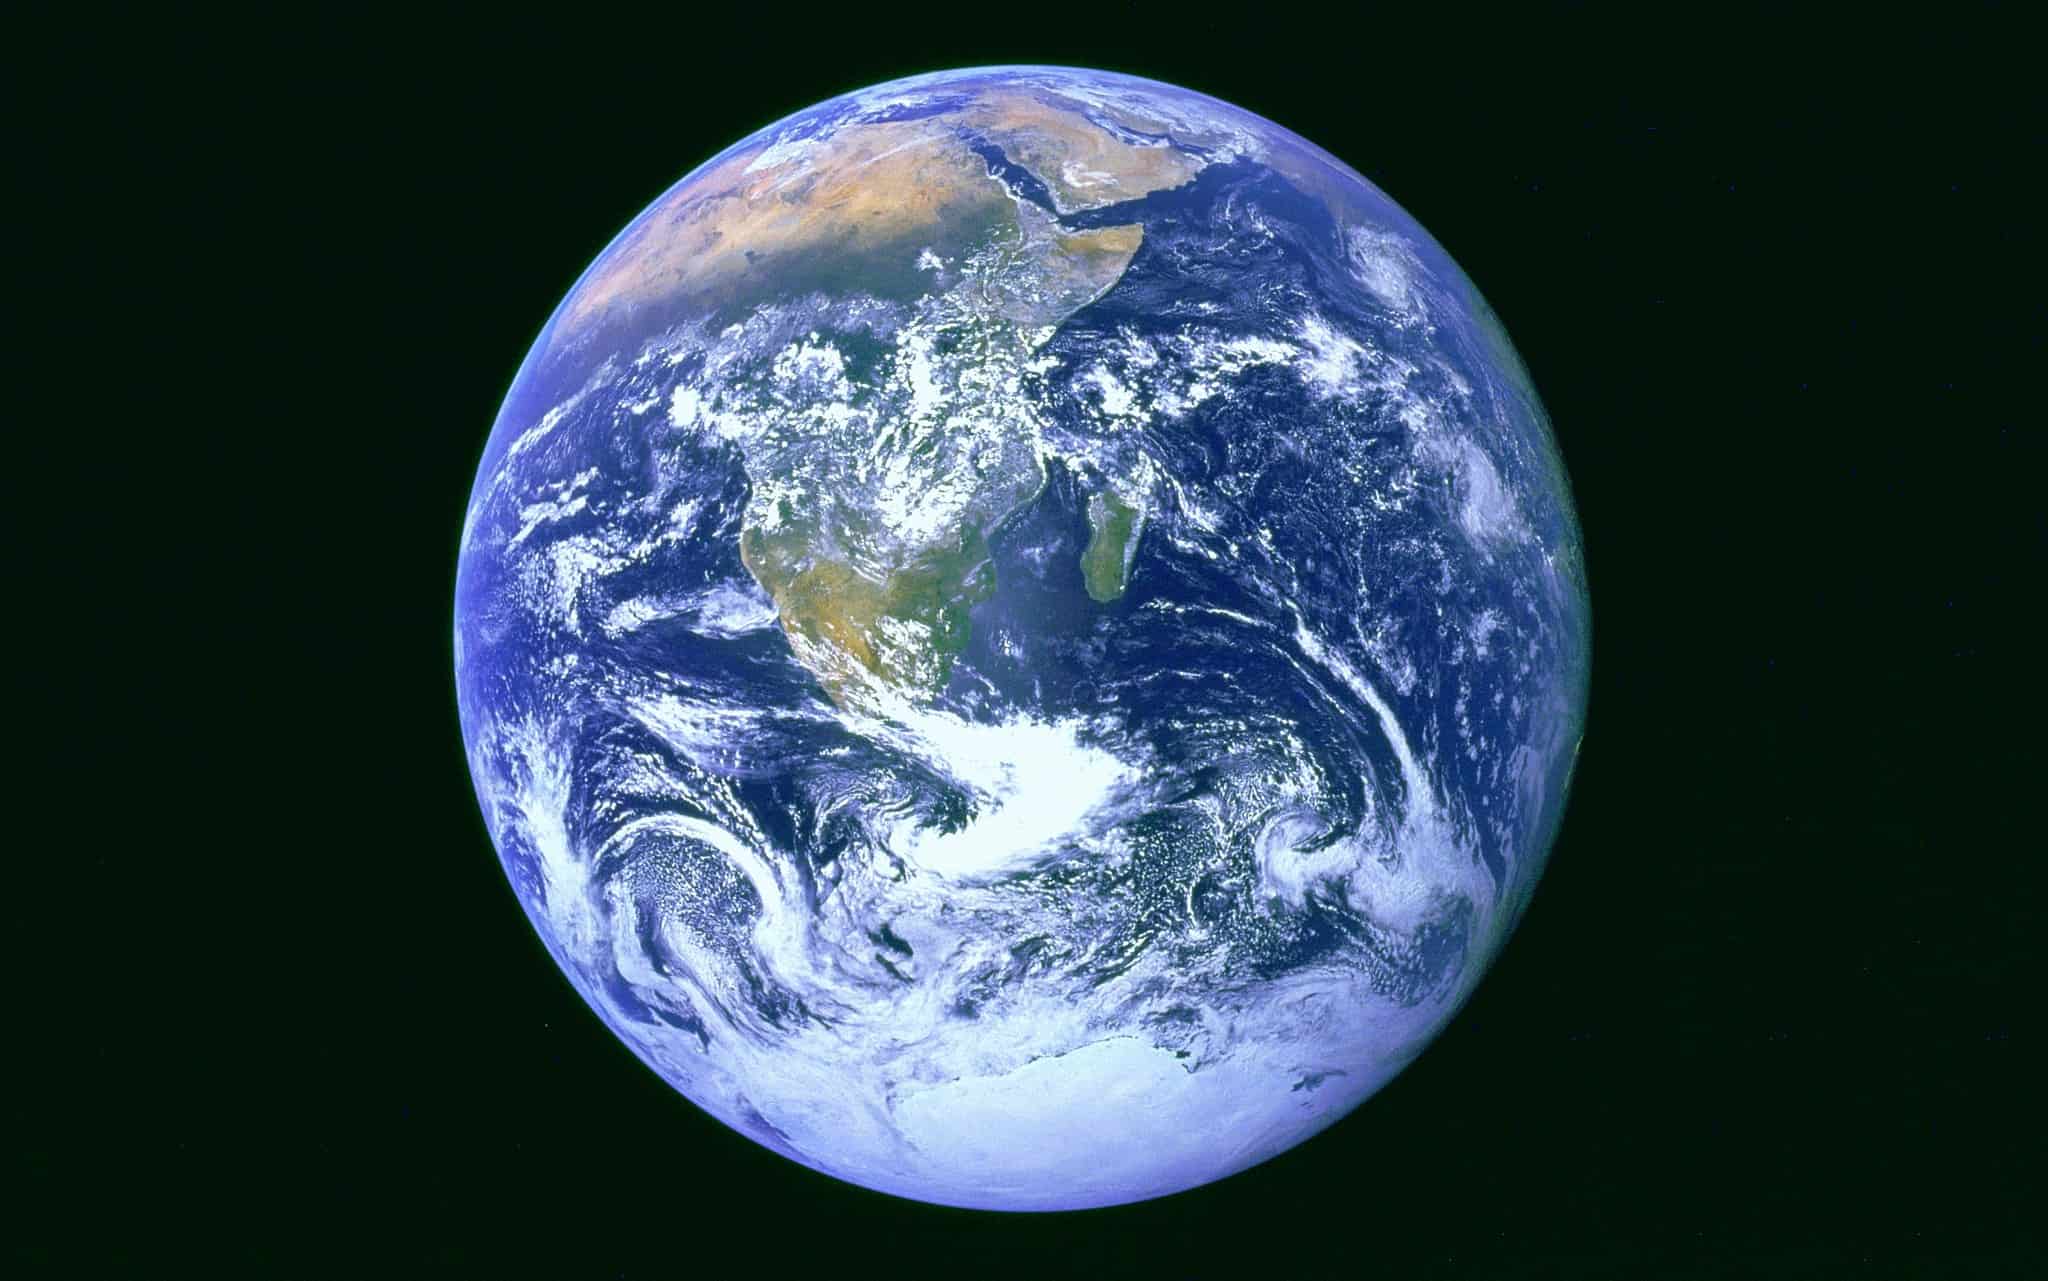 אילוסטרציה: תמונה של כדור הארץ מהחלל (צילום: NASA mission Apollo 17)